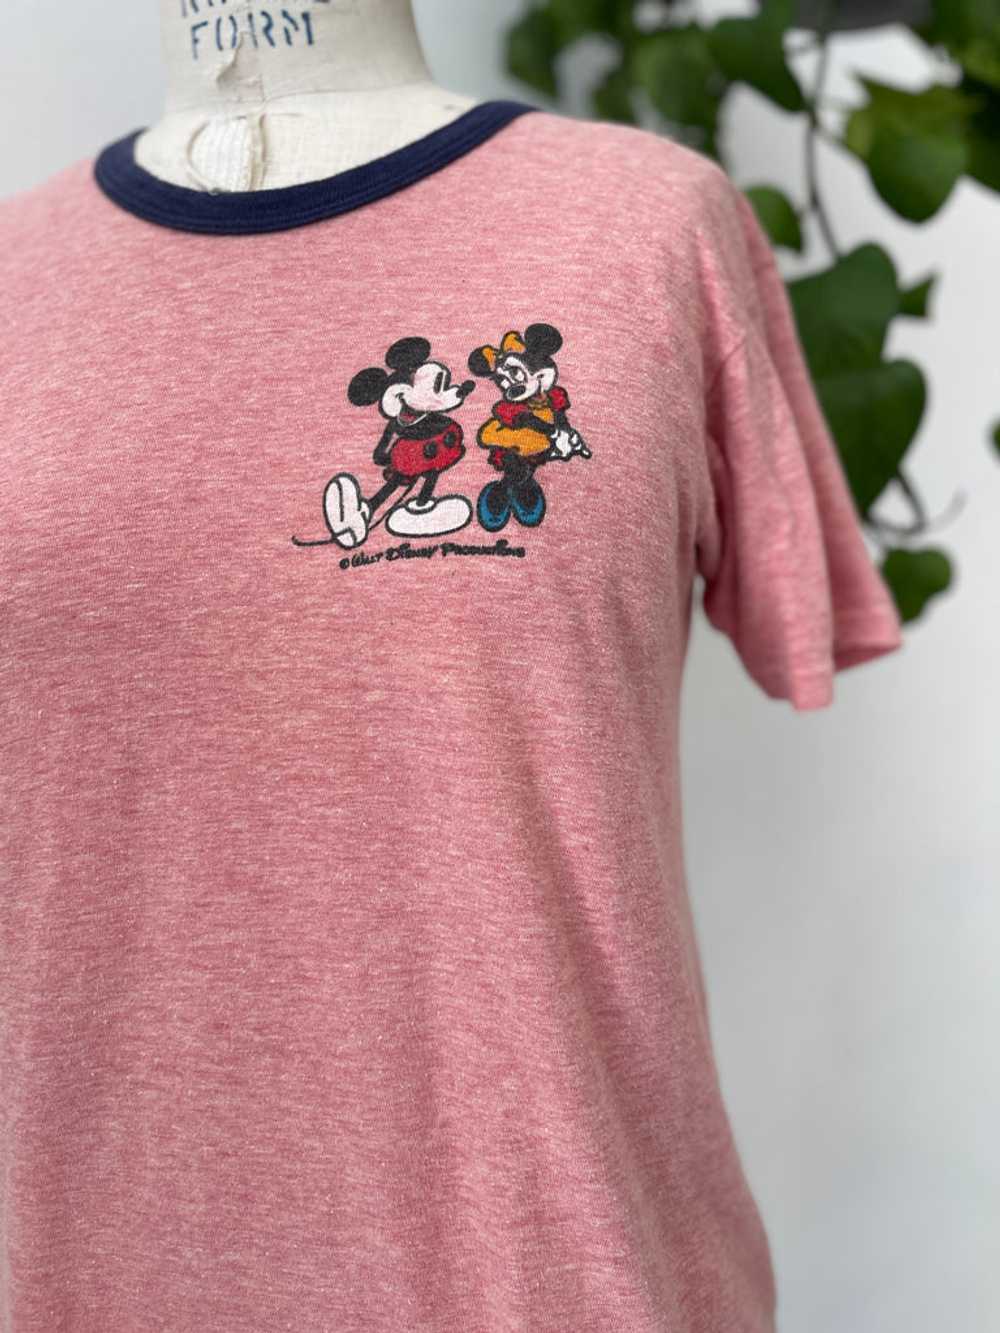 Vintage Disney ringer t shirt - image 1